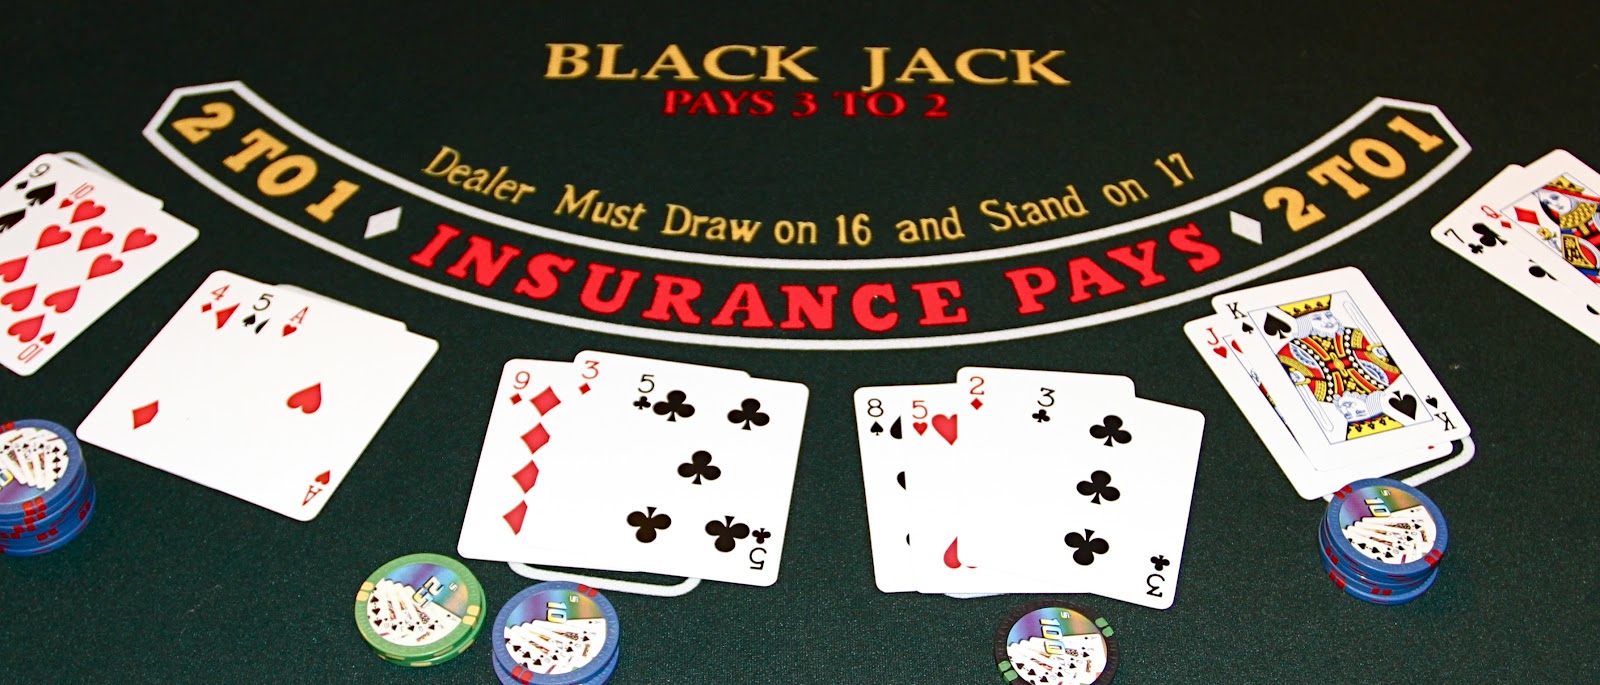 Comment ne pas perdre la main en blackjack ?